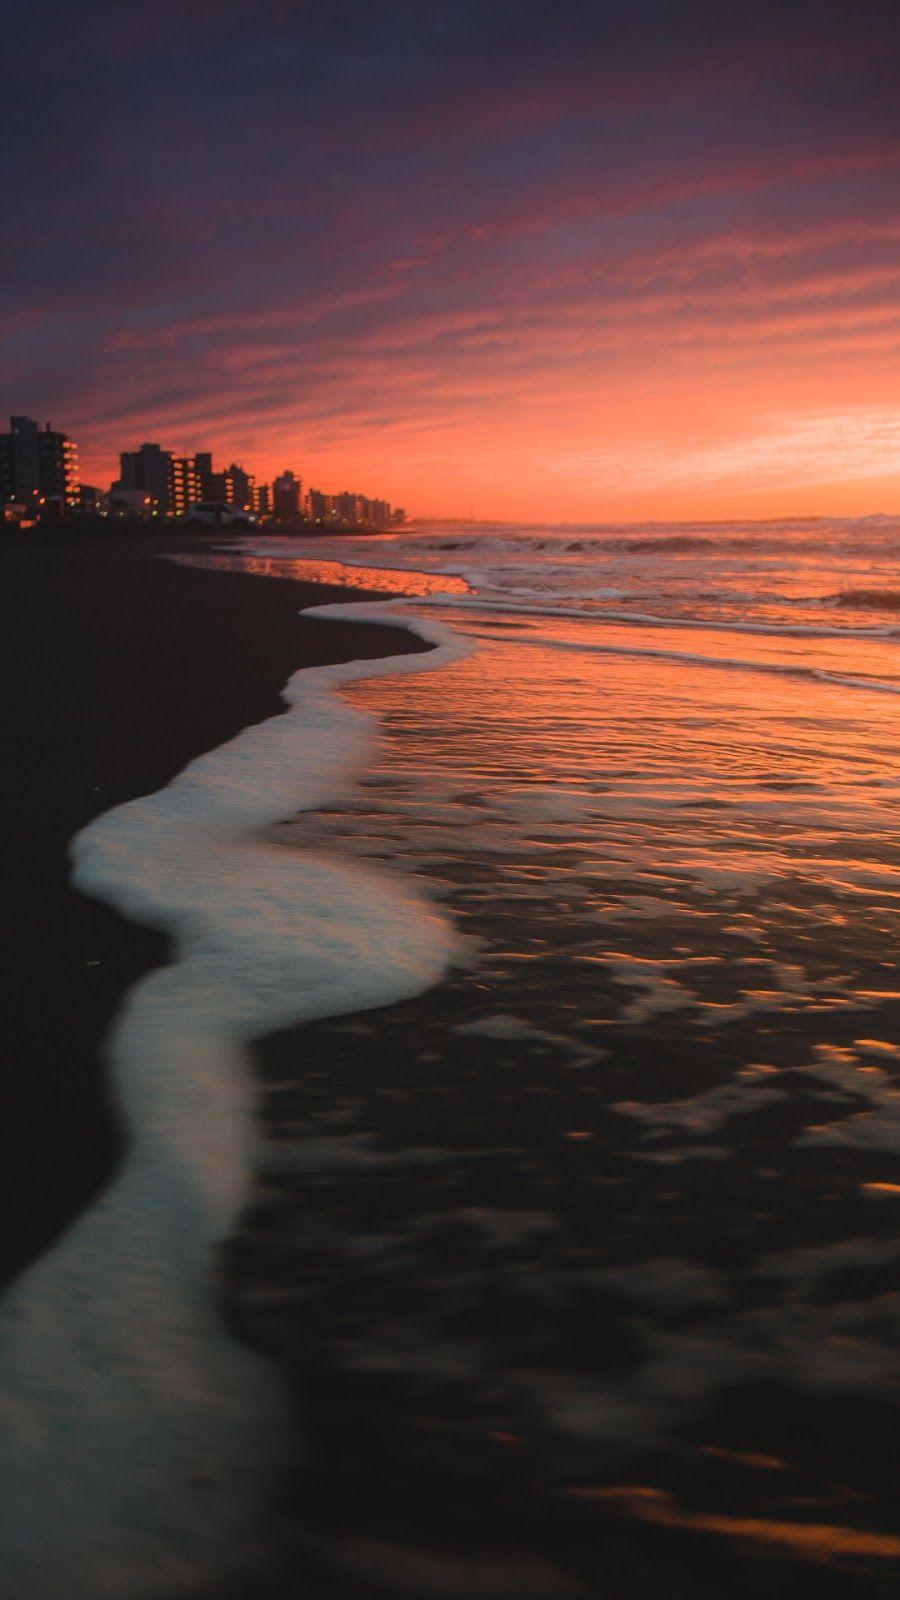 Sunset beach wallpaper. Wallpaper. iPhone wallpaper sky, Beach